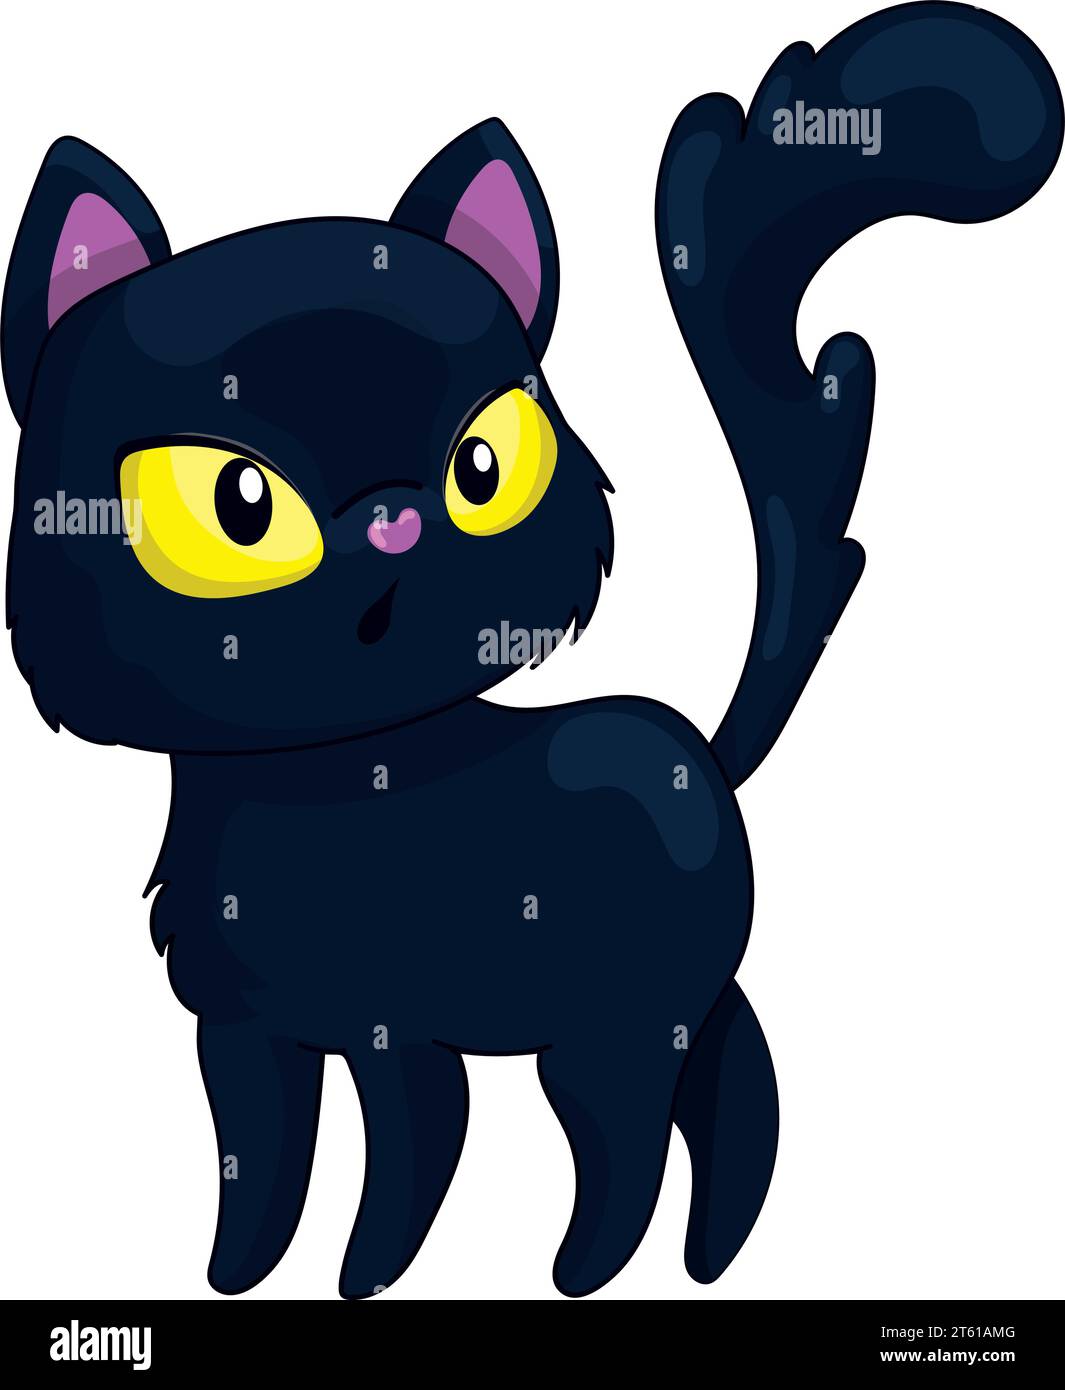 Black cat icon cute funny cartoon grumpy Vector Image